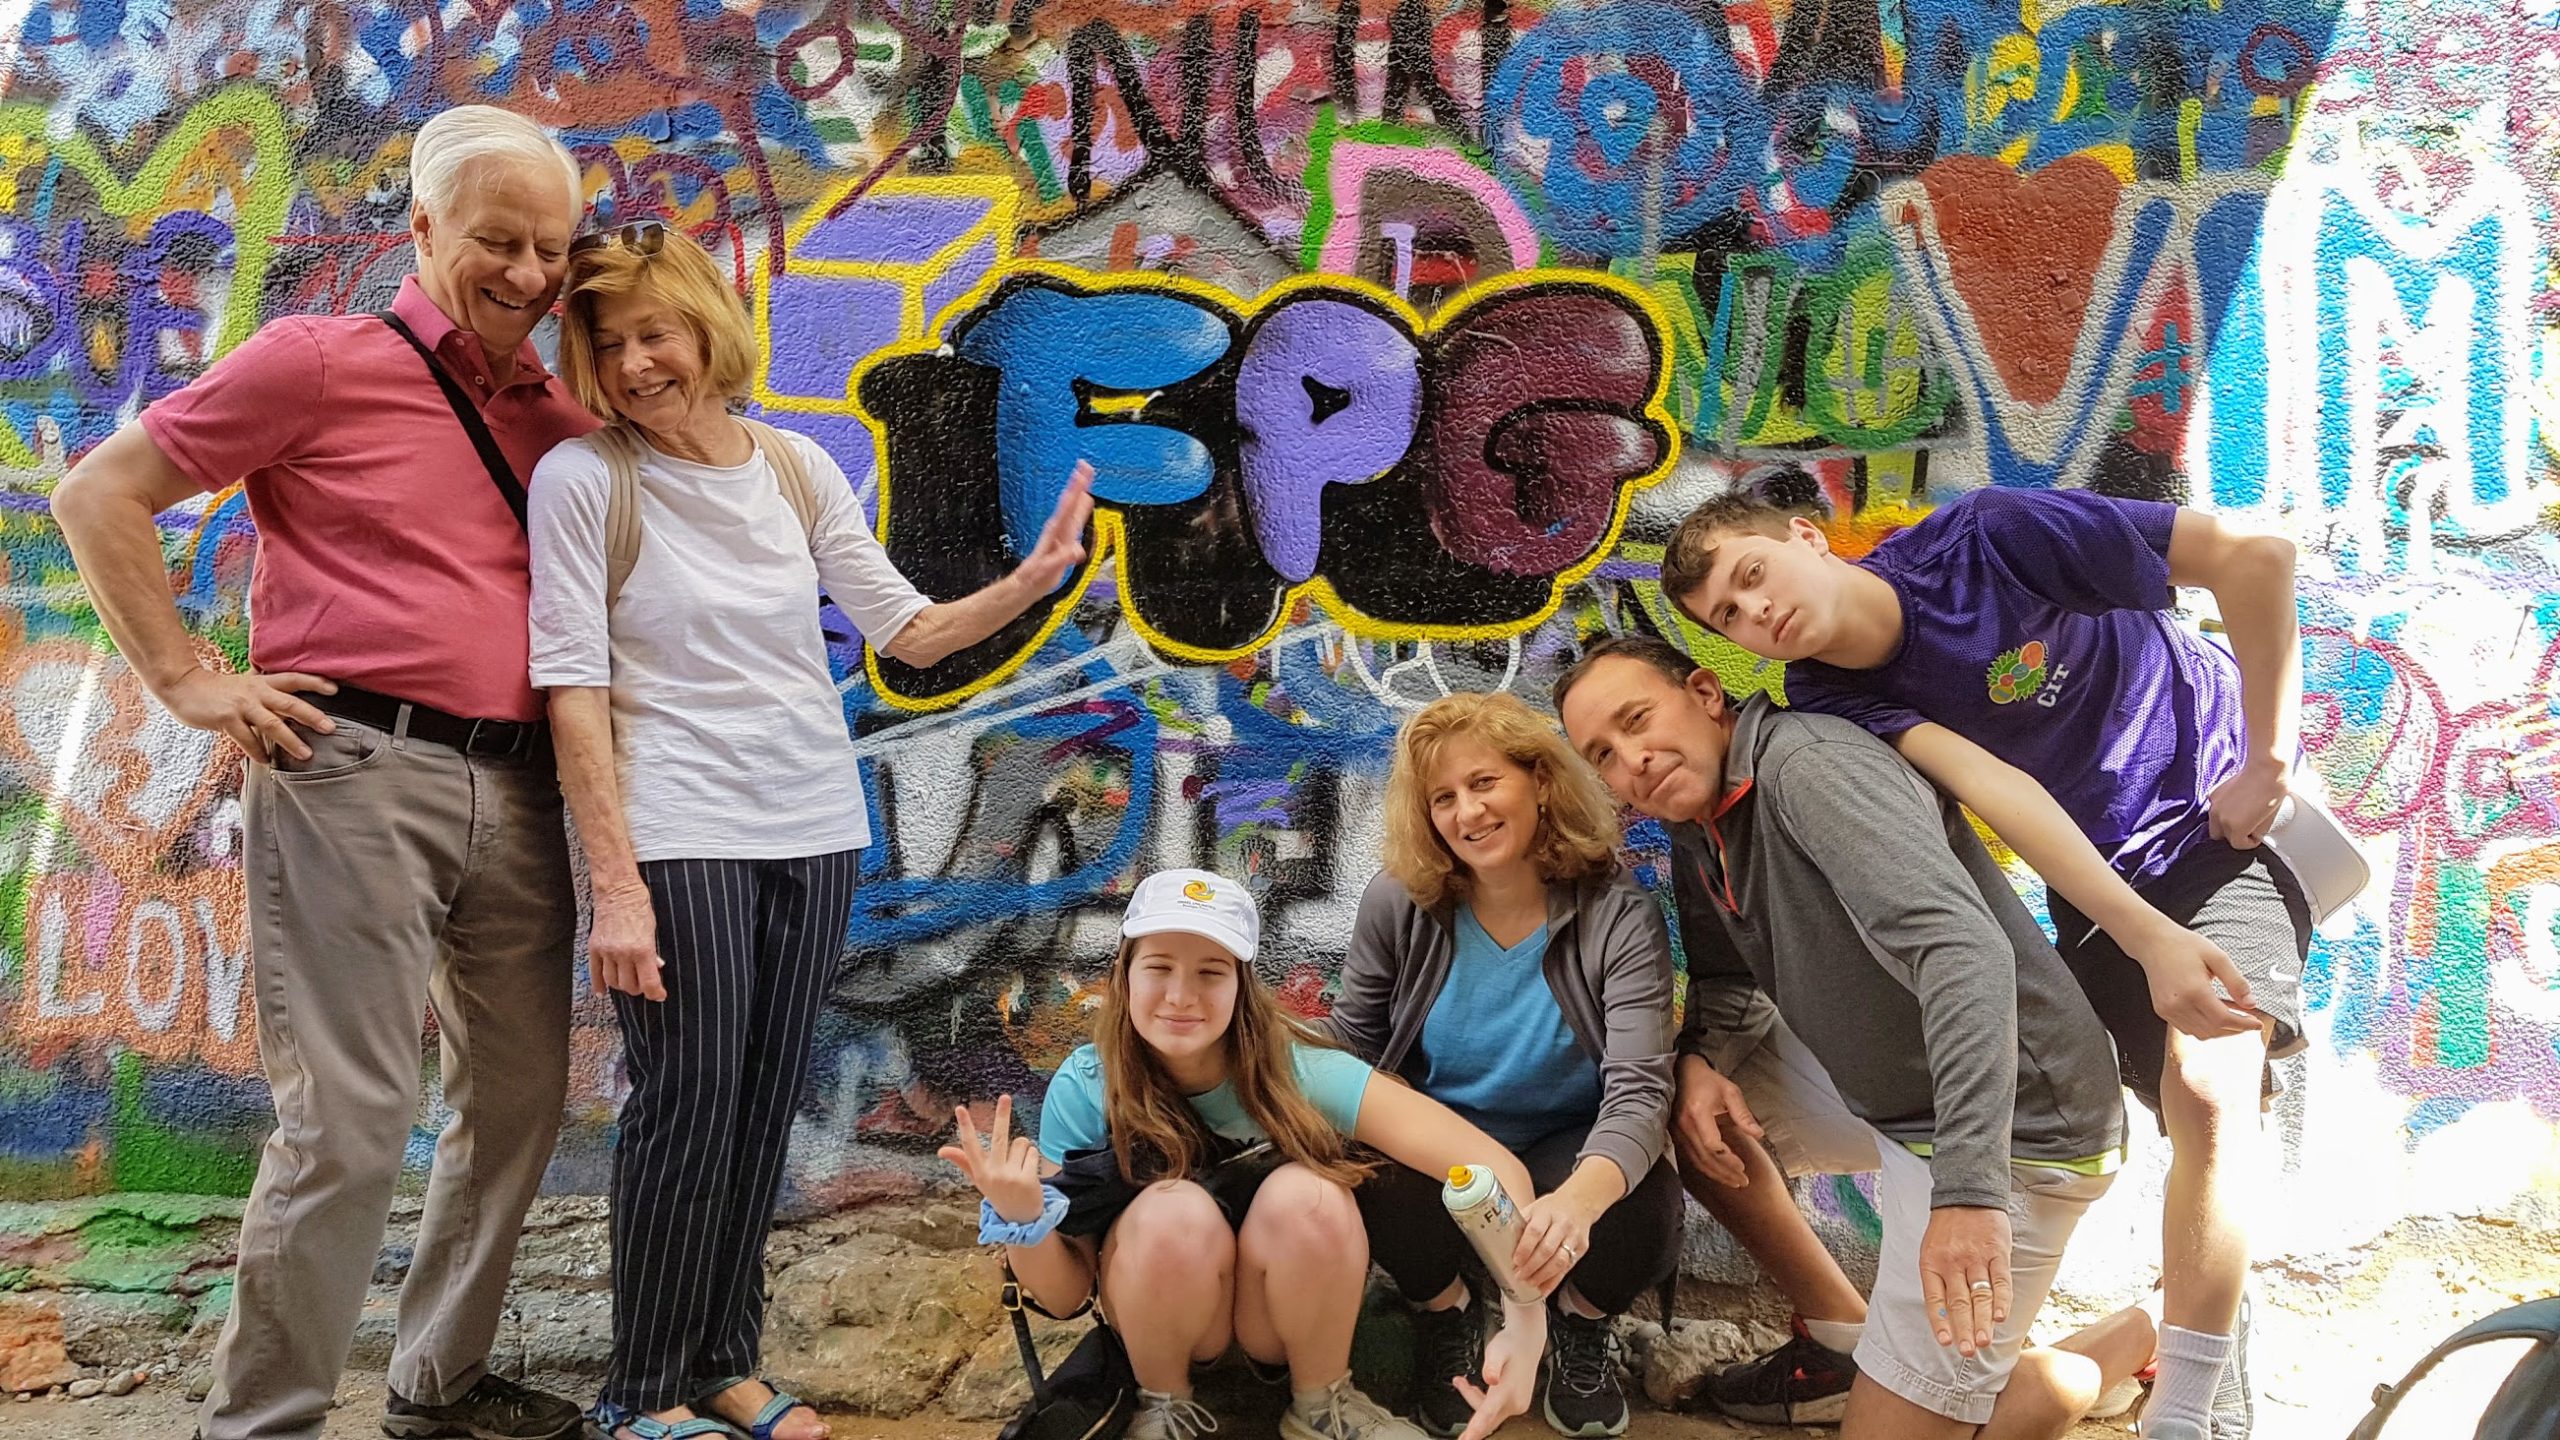 Tel Aviv Graffiti tour & workshop for small groups